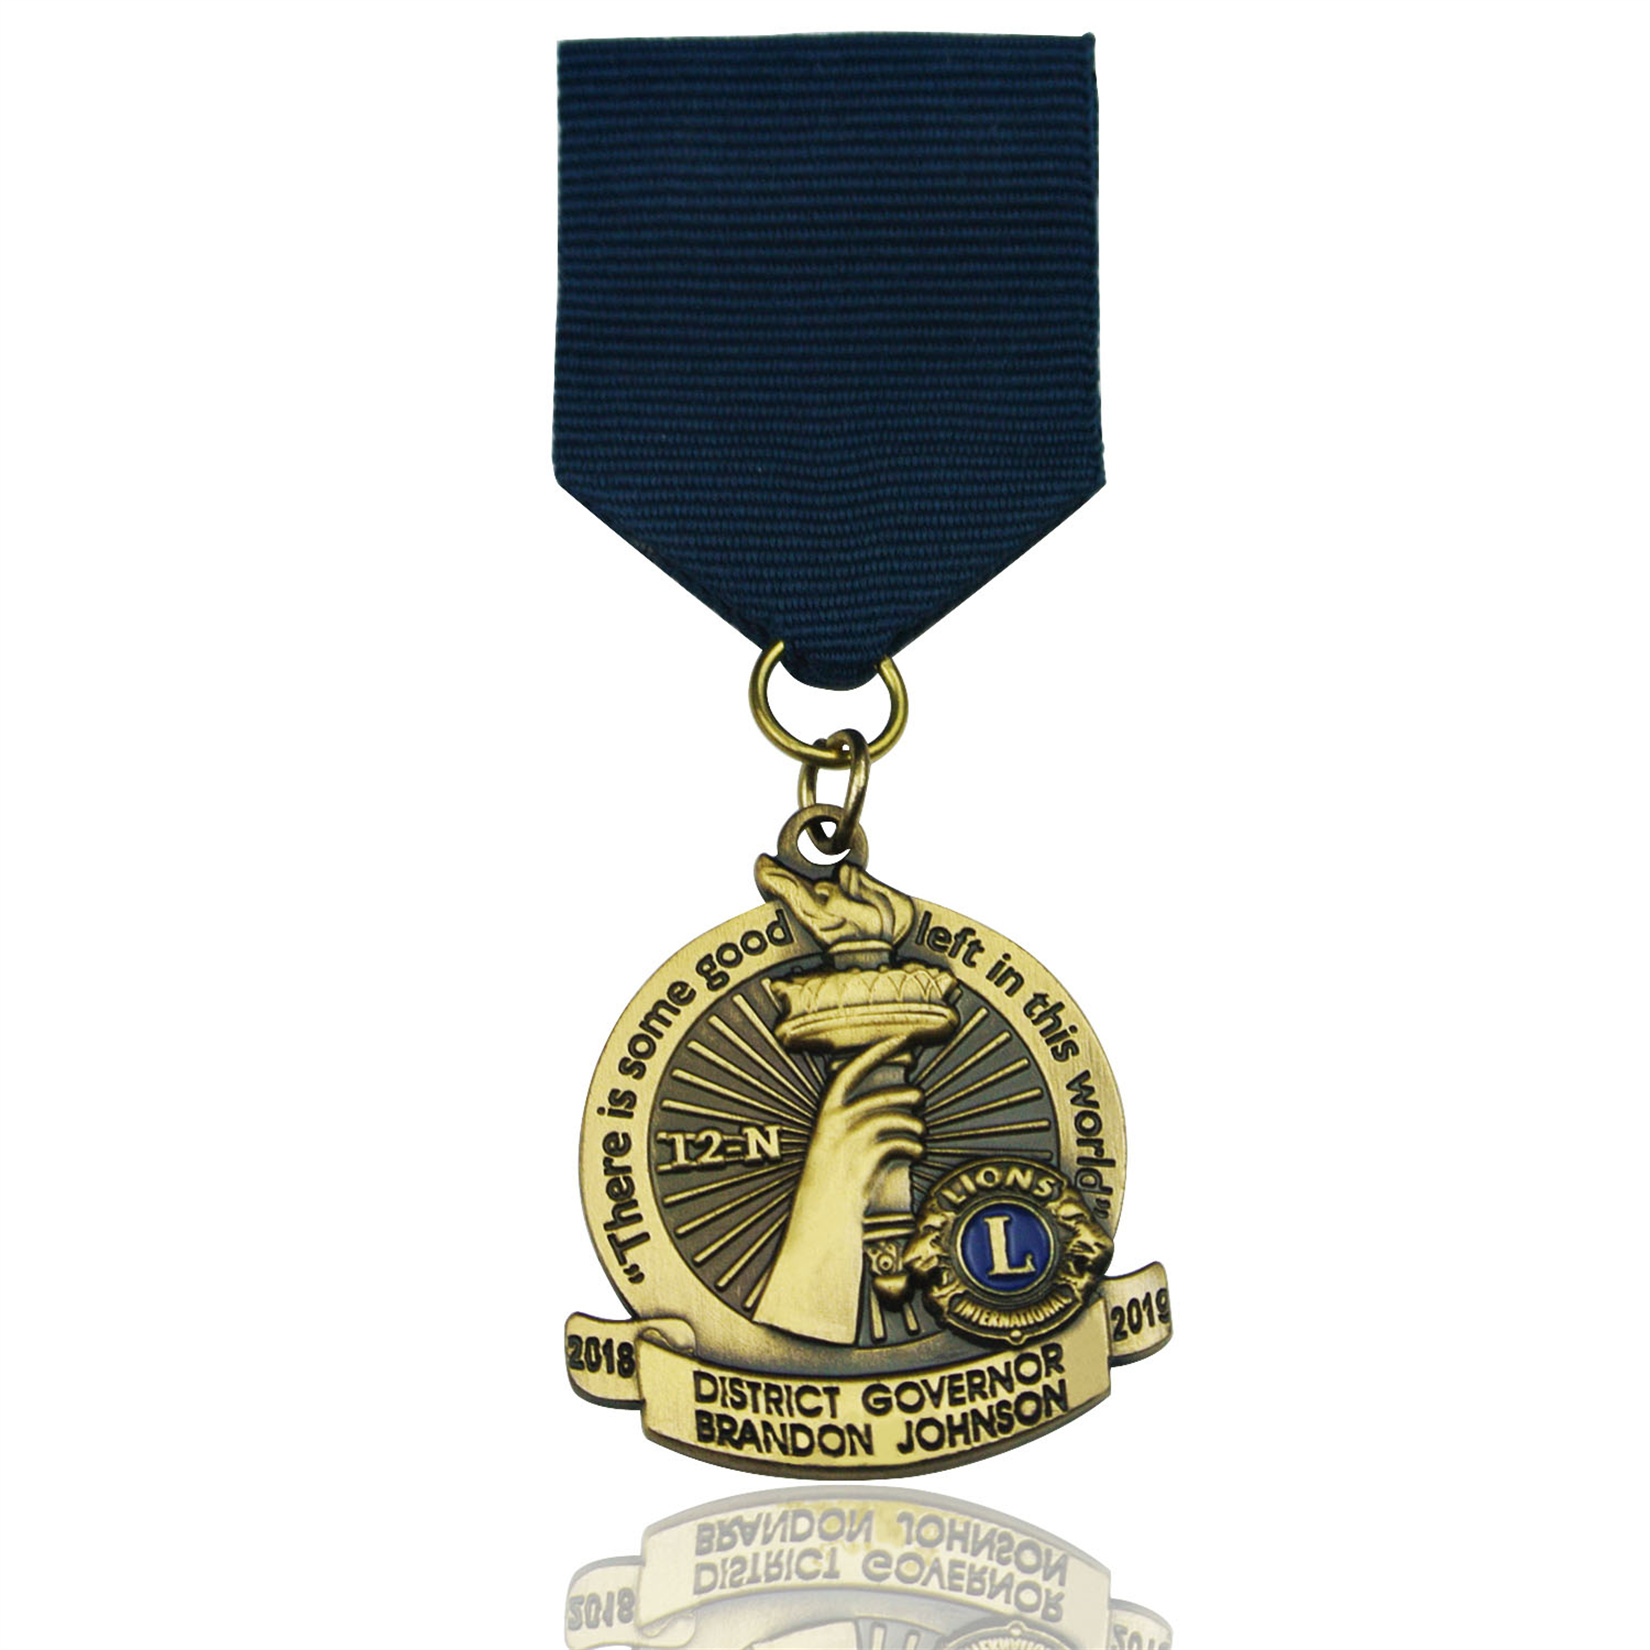 personnalize souvenir zinc alloy Military Medal